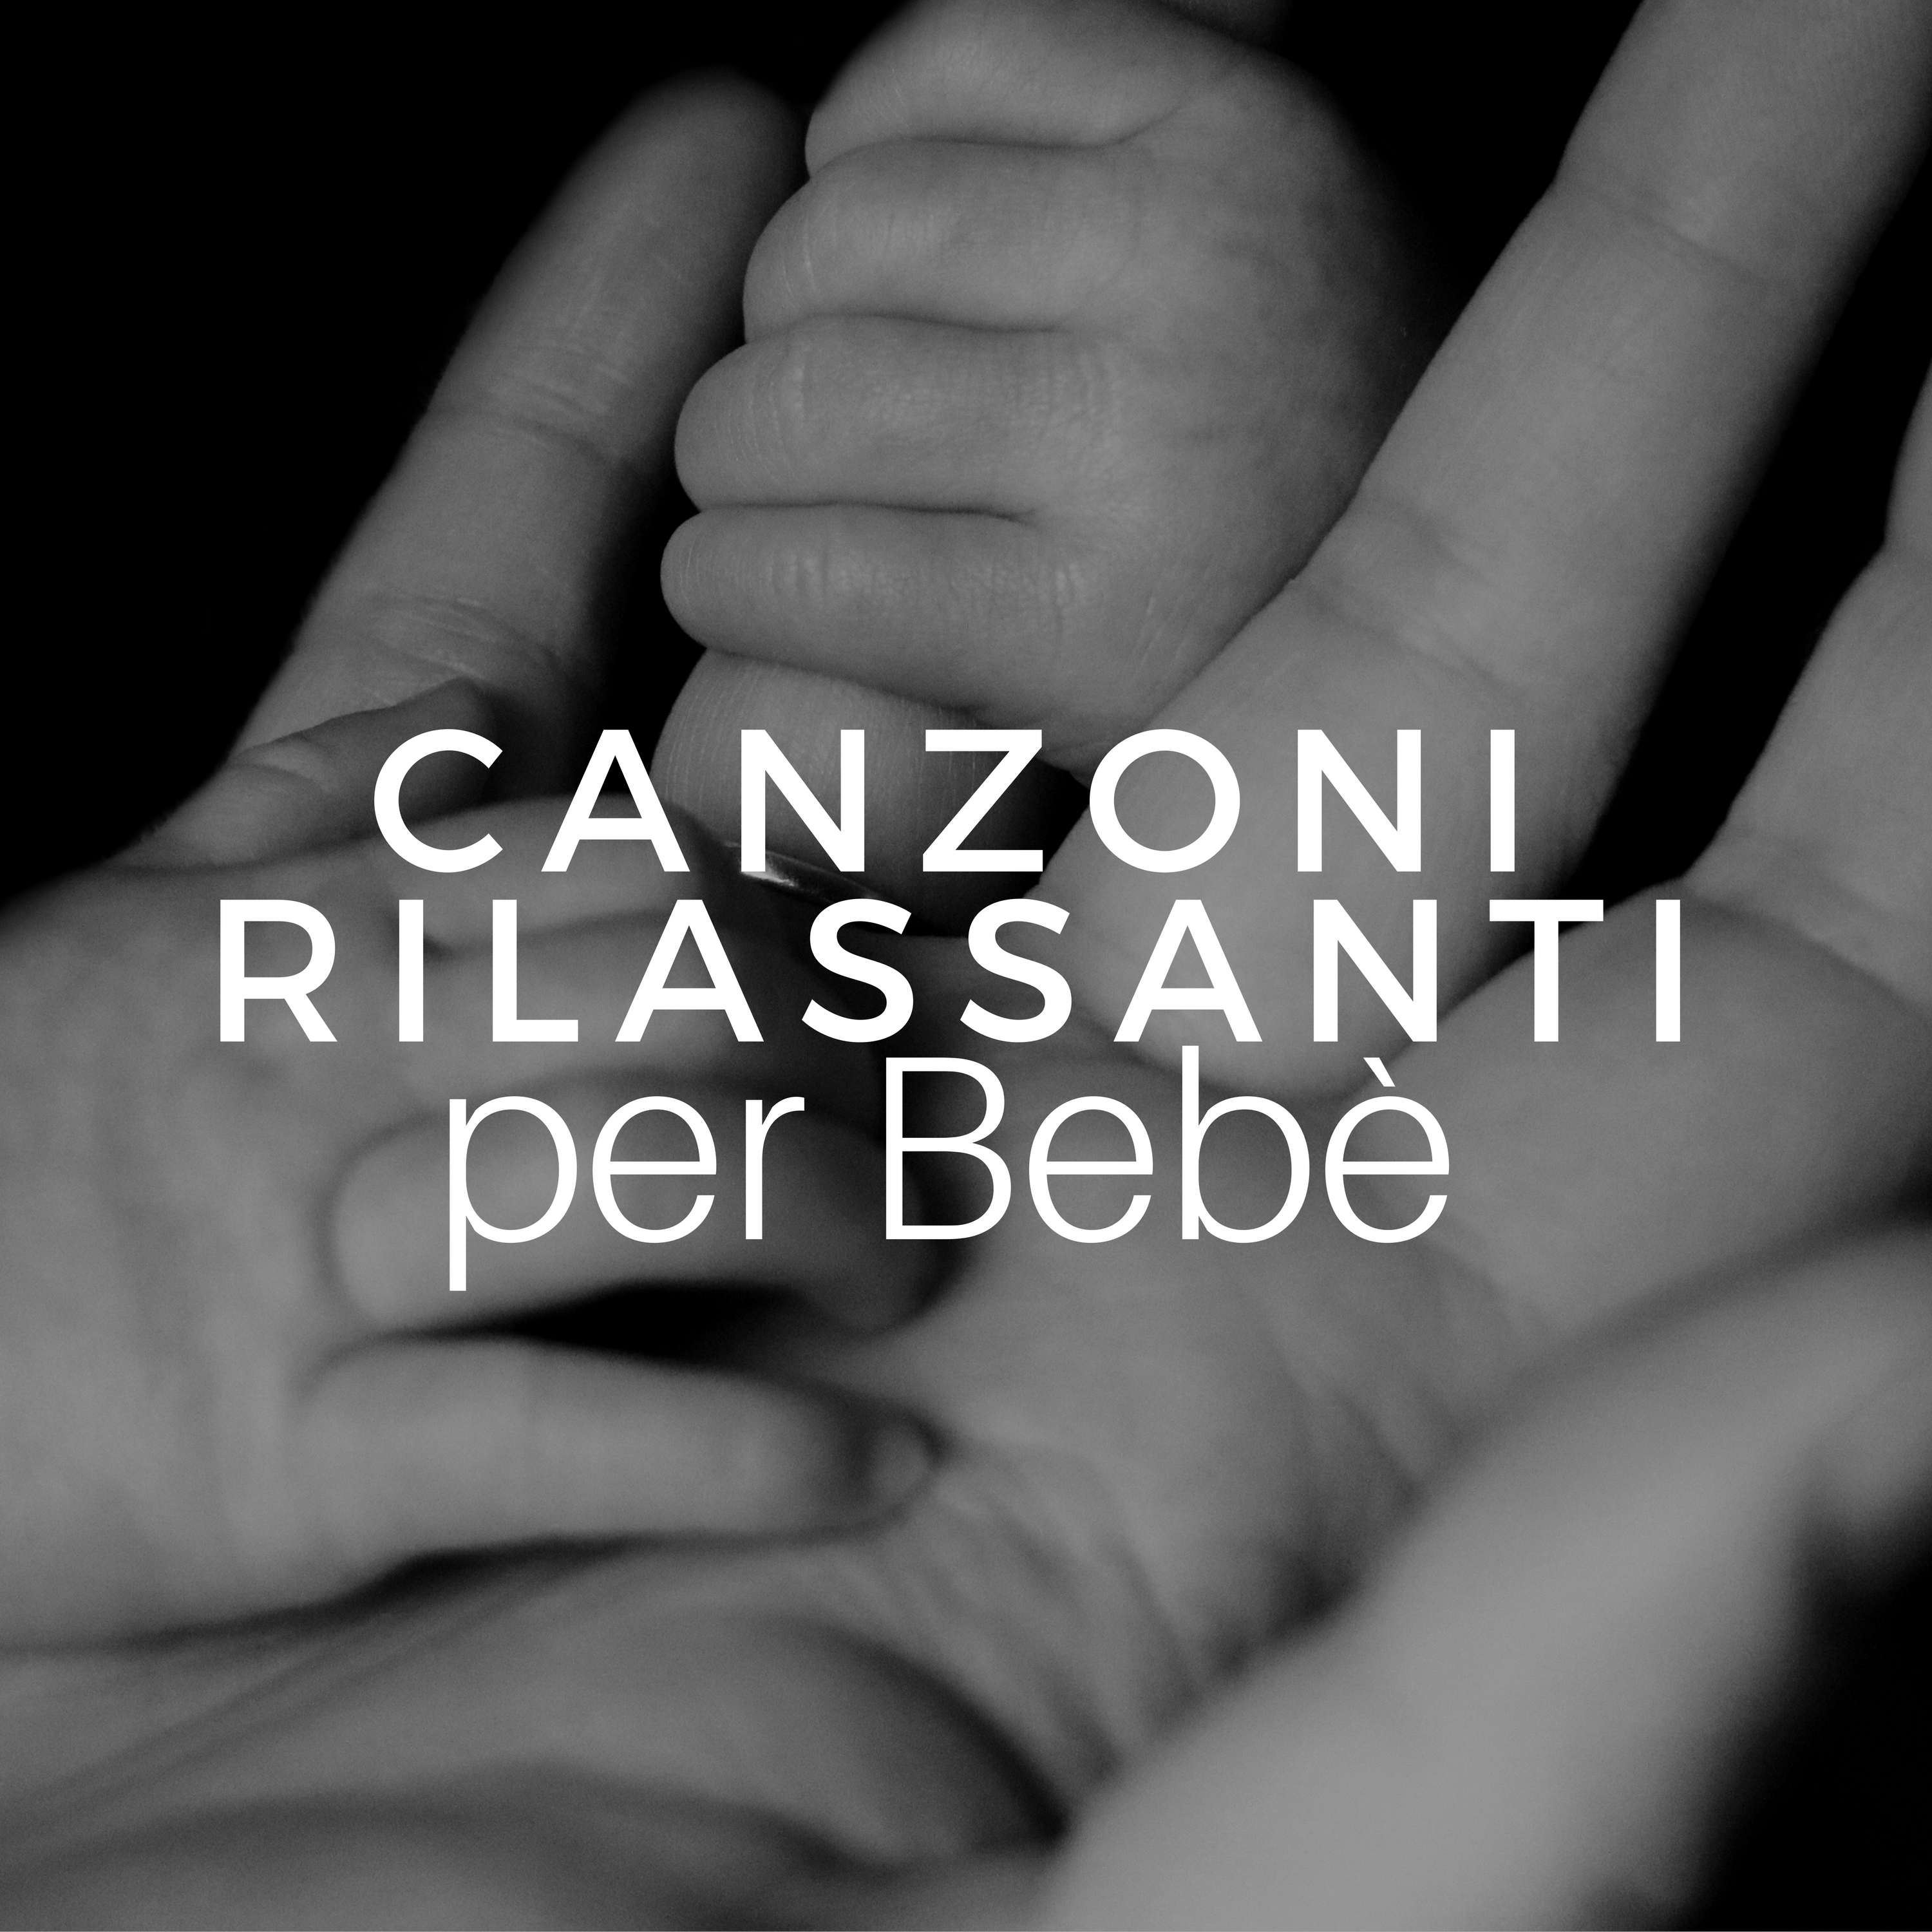 Canzoni Rilassanti per Bebe  Bambini, Neonati, Mamme in Dolce Attesa, Gravidanza, Rilassamento pre Parto